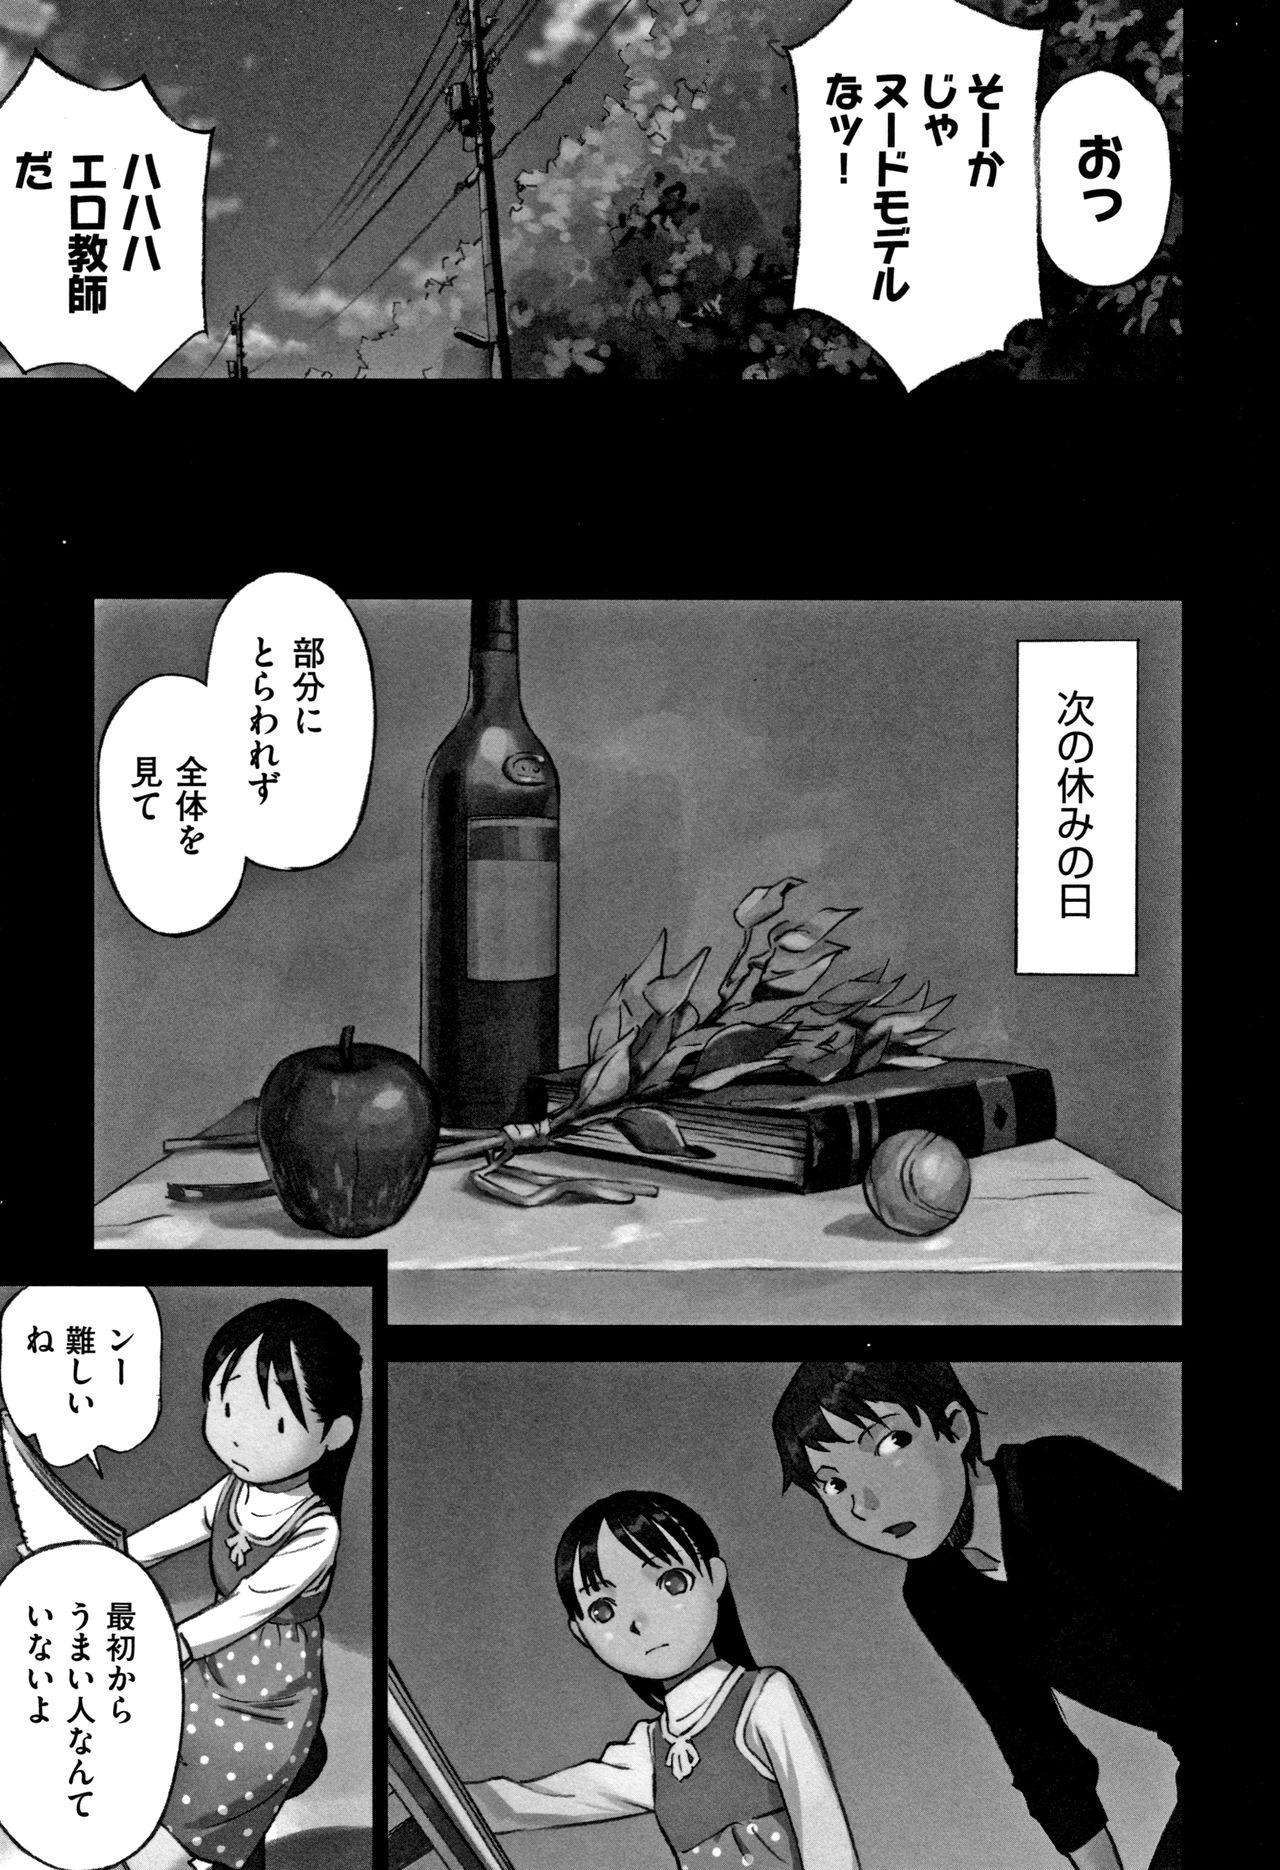 Otokonoko wa Soko no Kouzou ga Shiritai noda Page 184 Of 218.